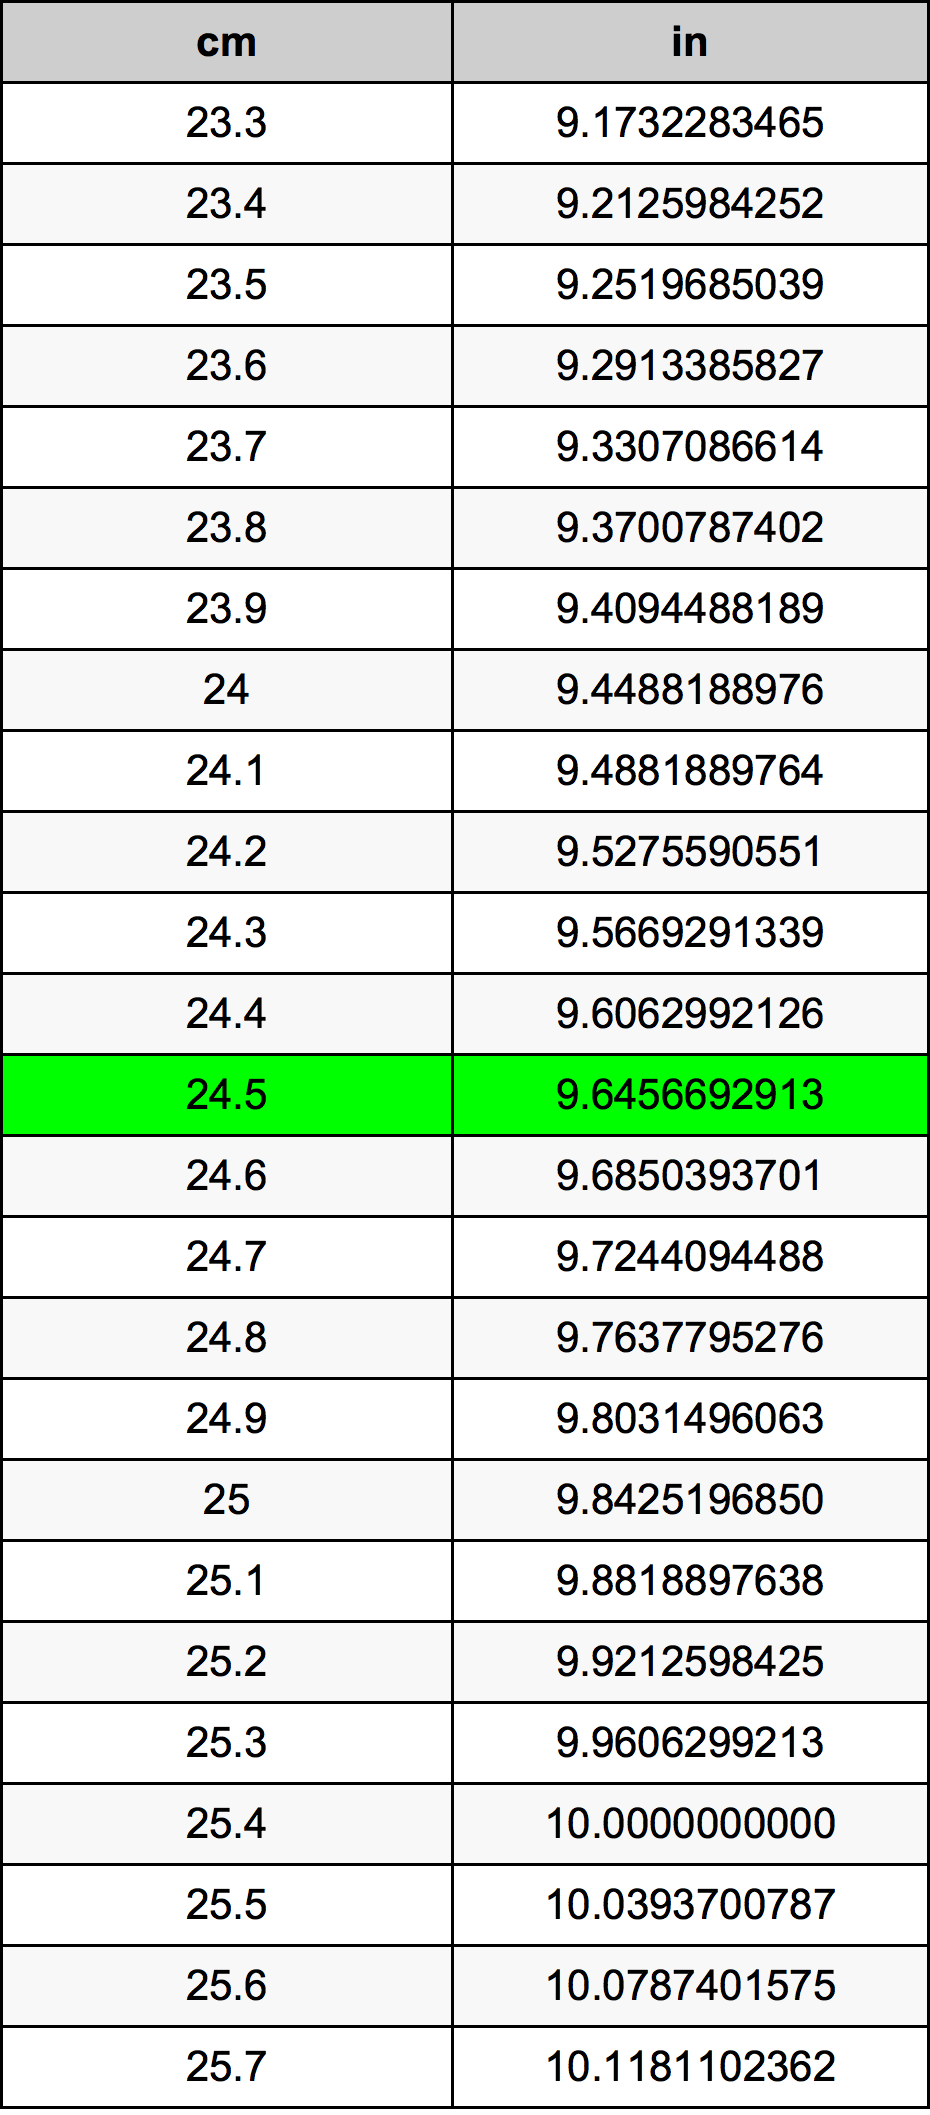 24.5 Centiméter átszámítási táblázat